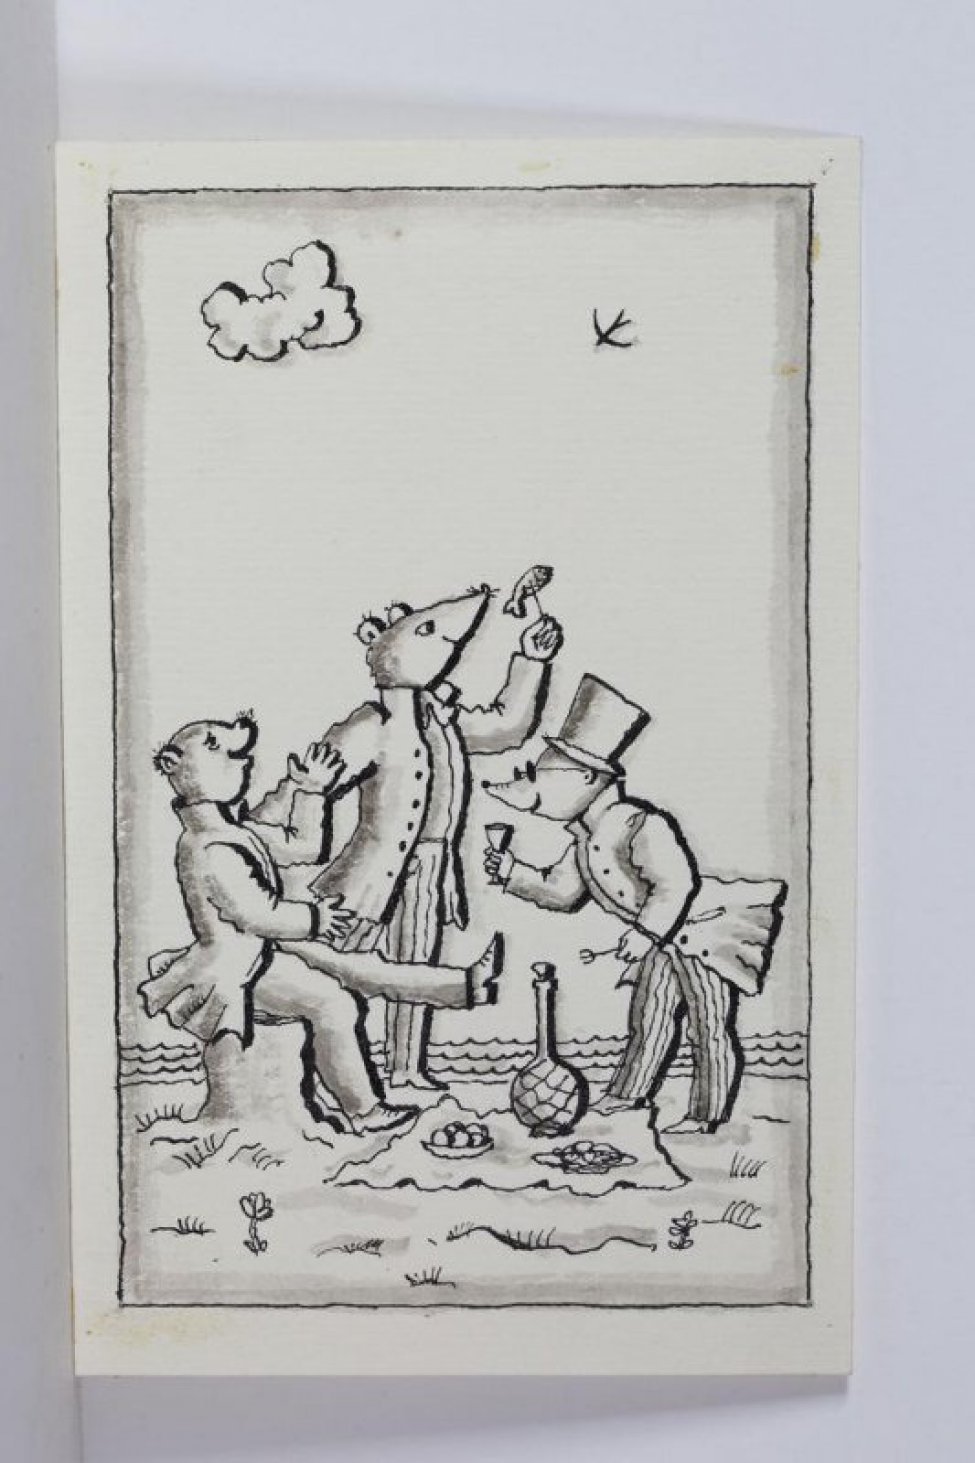 Стилизованное изображение хомяка, сидящего на пне, мыши с рыбой на вилке и крота с рюмкой в одной и вилкой в другой "руке".